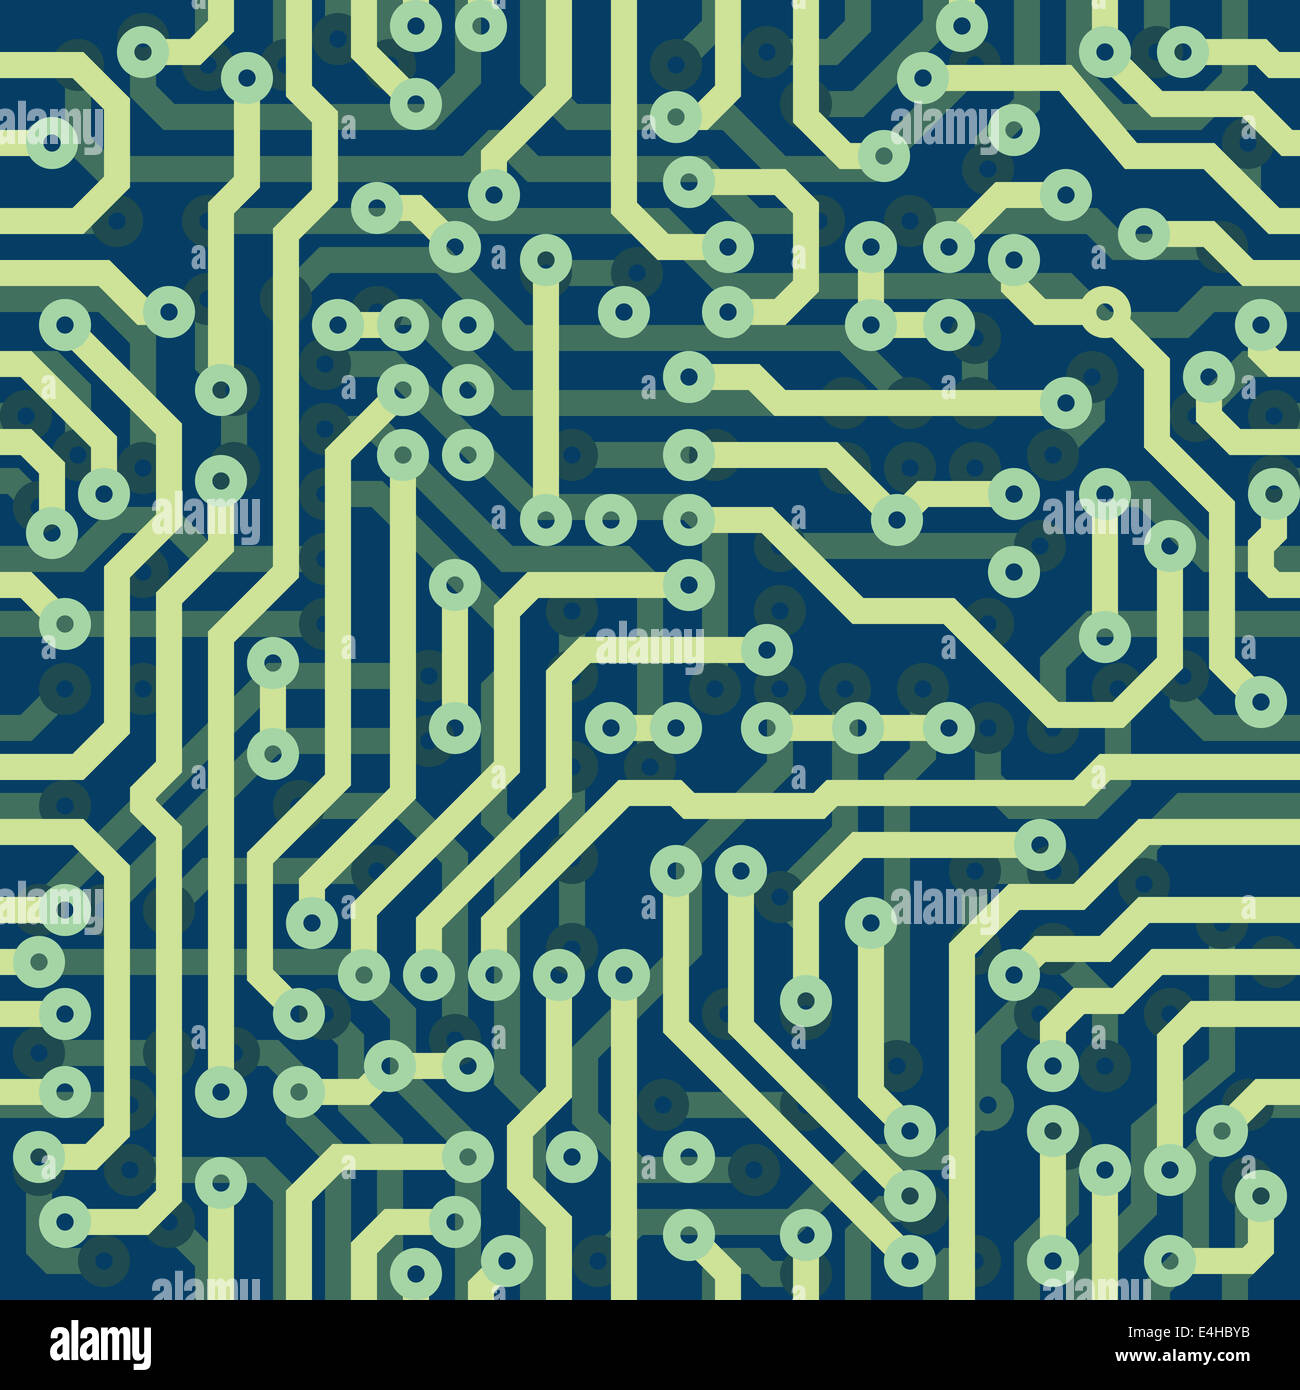 High-Tech-schematische nahtlose Textur - blaue Elektronikplatine Stockfoto